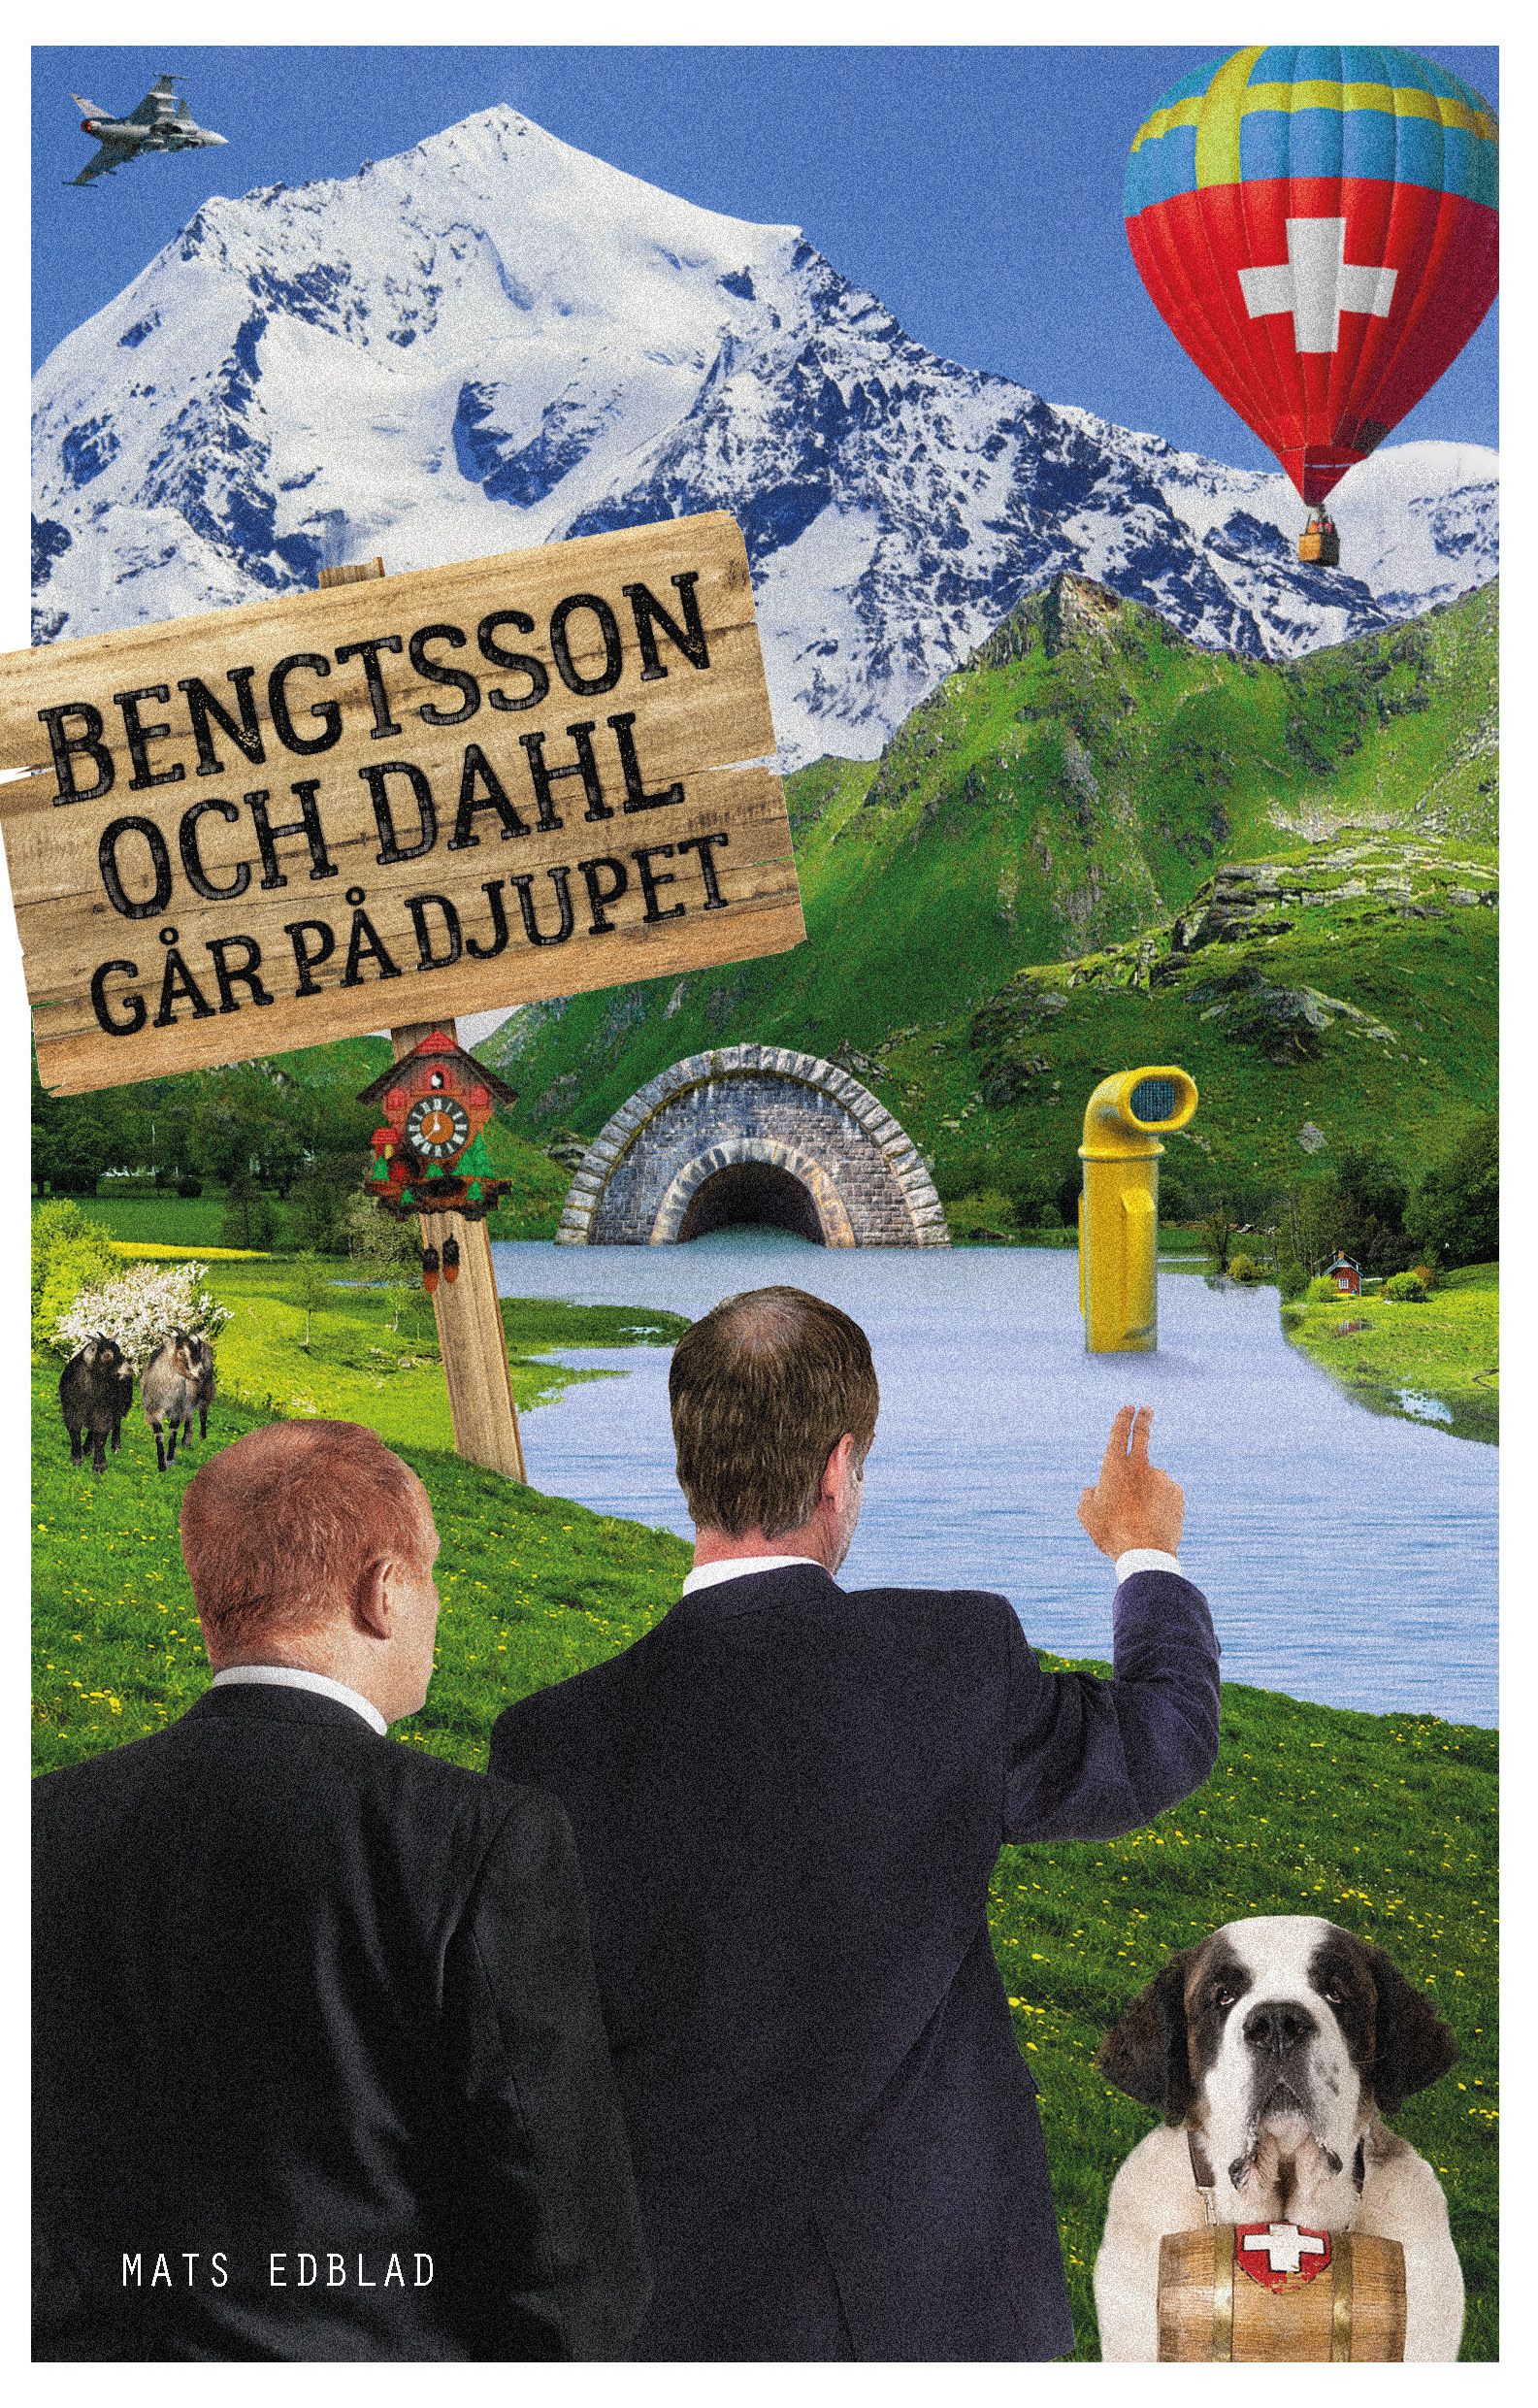 Bengtsson och Dahl går på djupet, e-bog af Mats Edblad